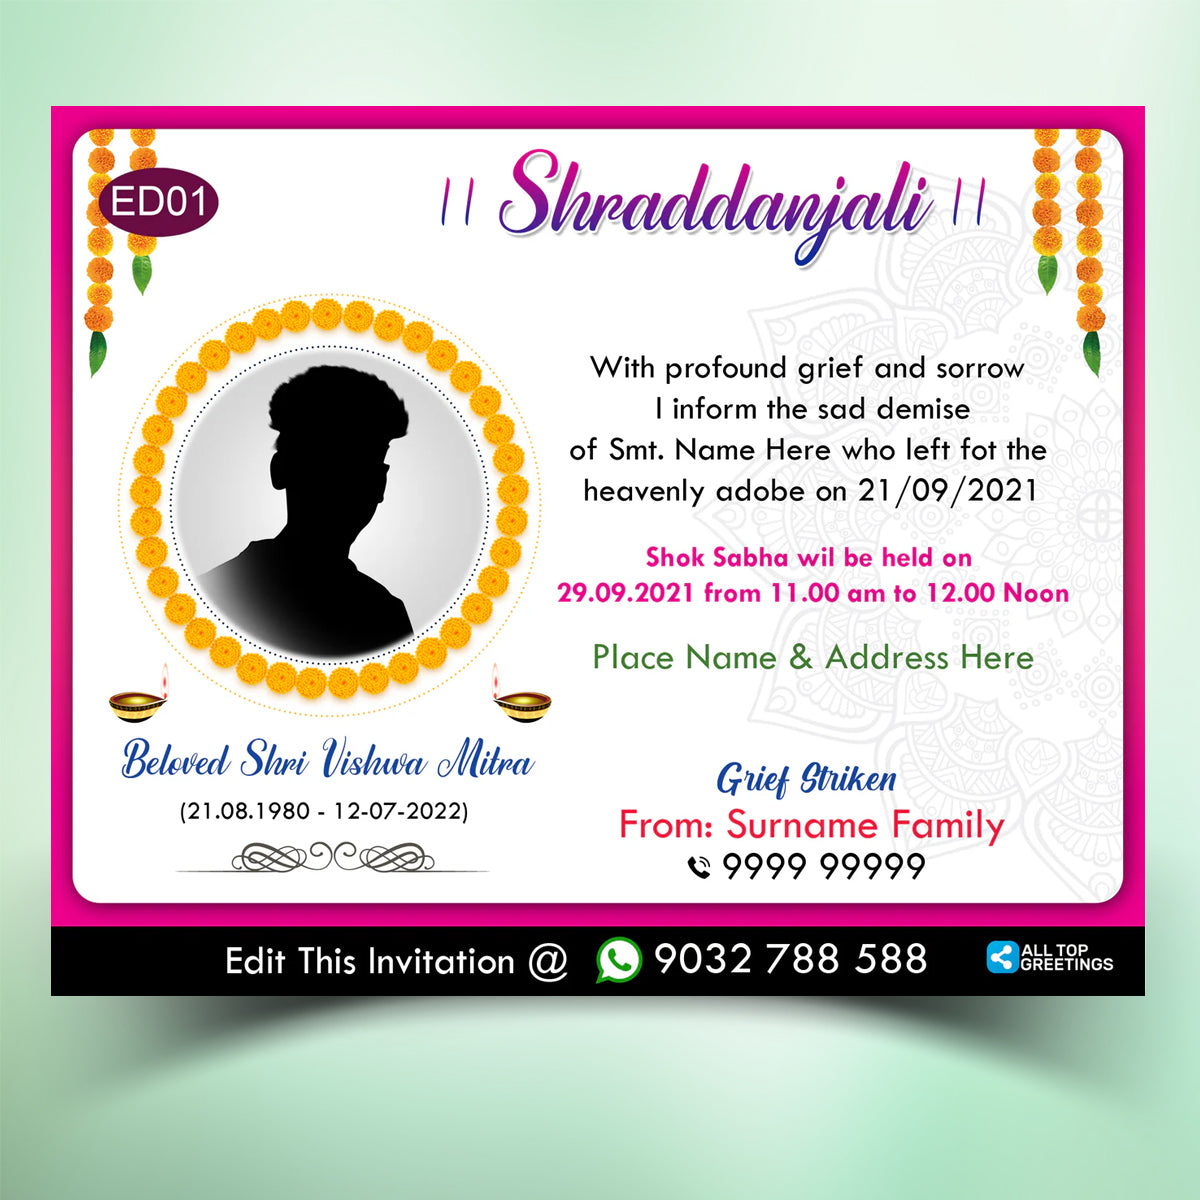 Shradhanjali English Invitation Card Shok Sabha Invitation Card Online - ED01